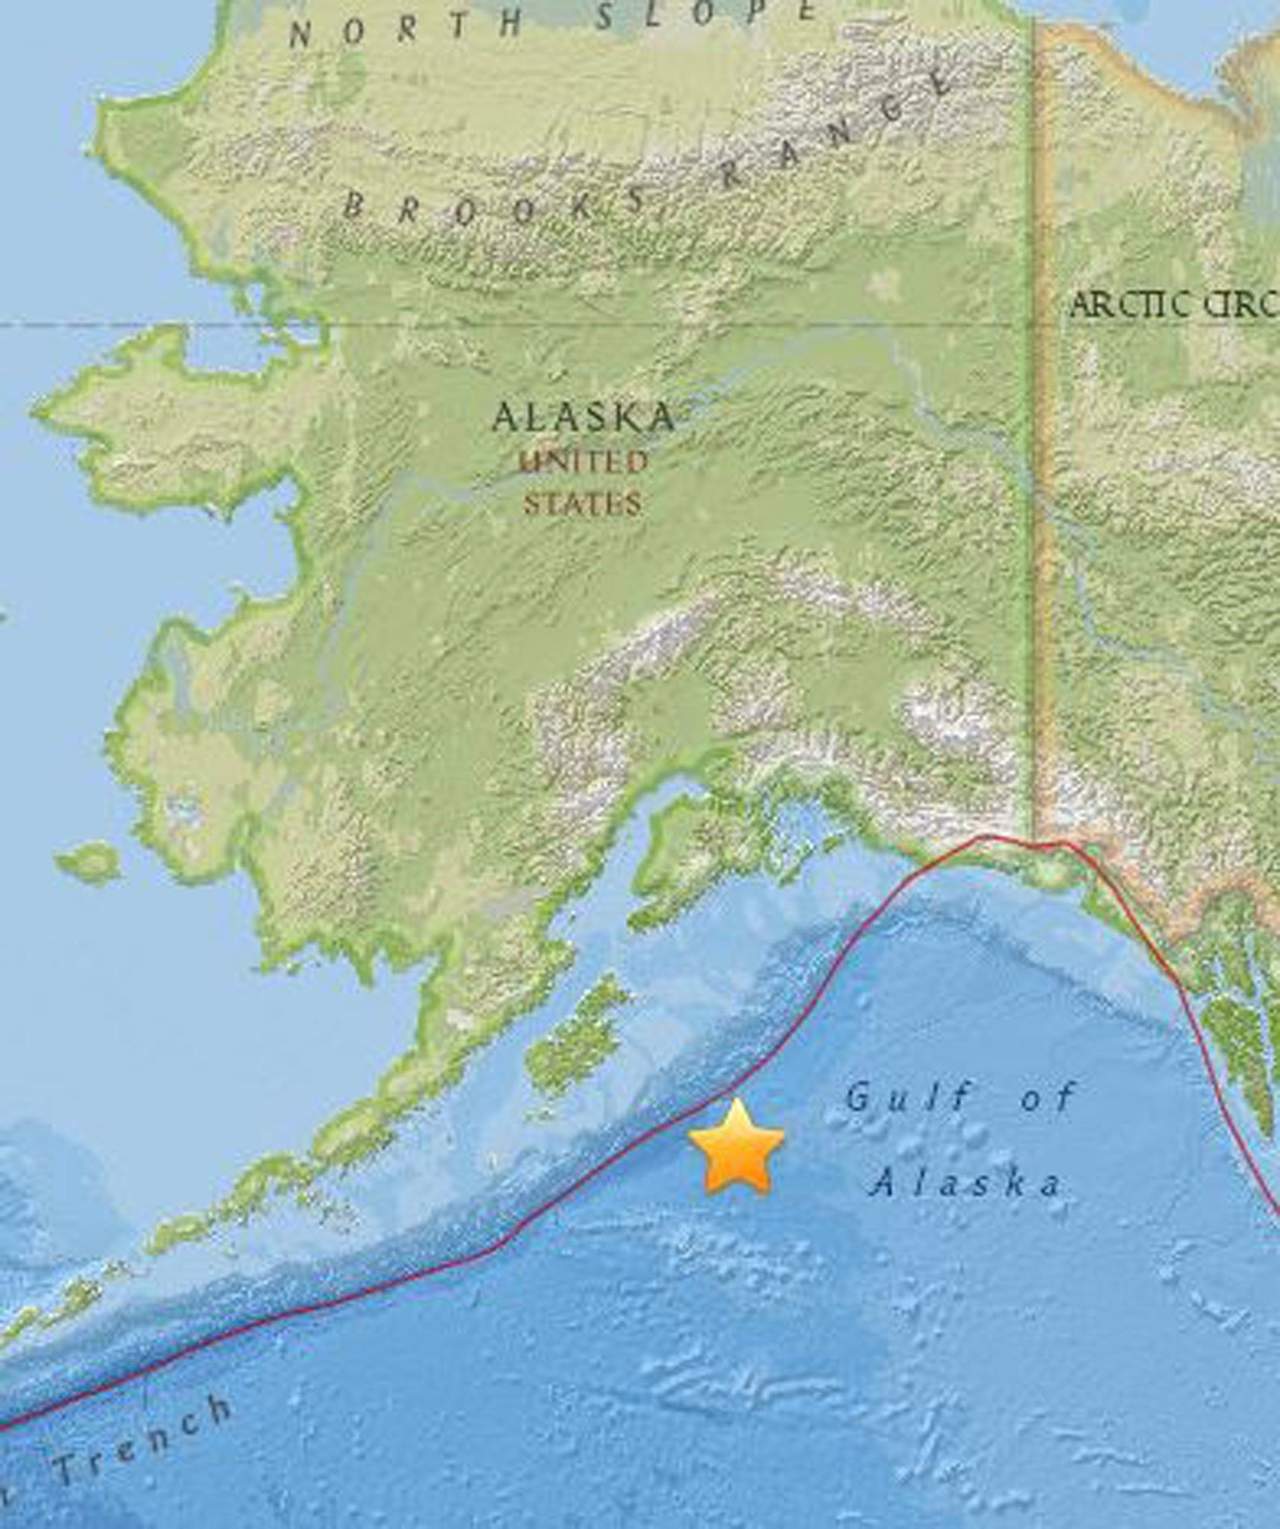 El epicentro se ubicó a 25 kilómetros de profundidad en el Golfo de Alaska, a unos 280 kilómetros al sureste de Kodiak, una localidad de poco más de seis mil habitantes, que hasta el momento no reporta daños. (ARCHIVO)
